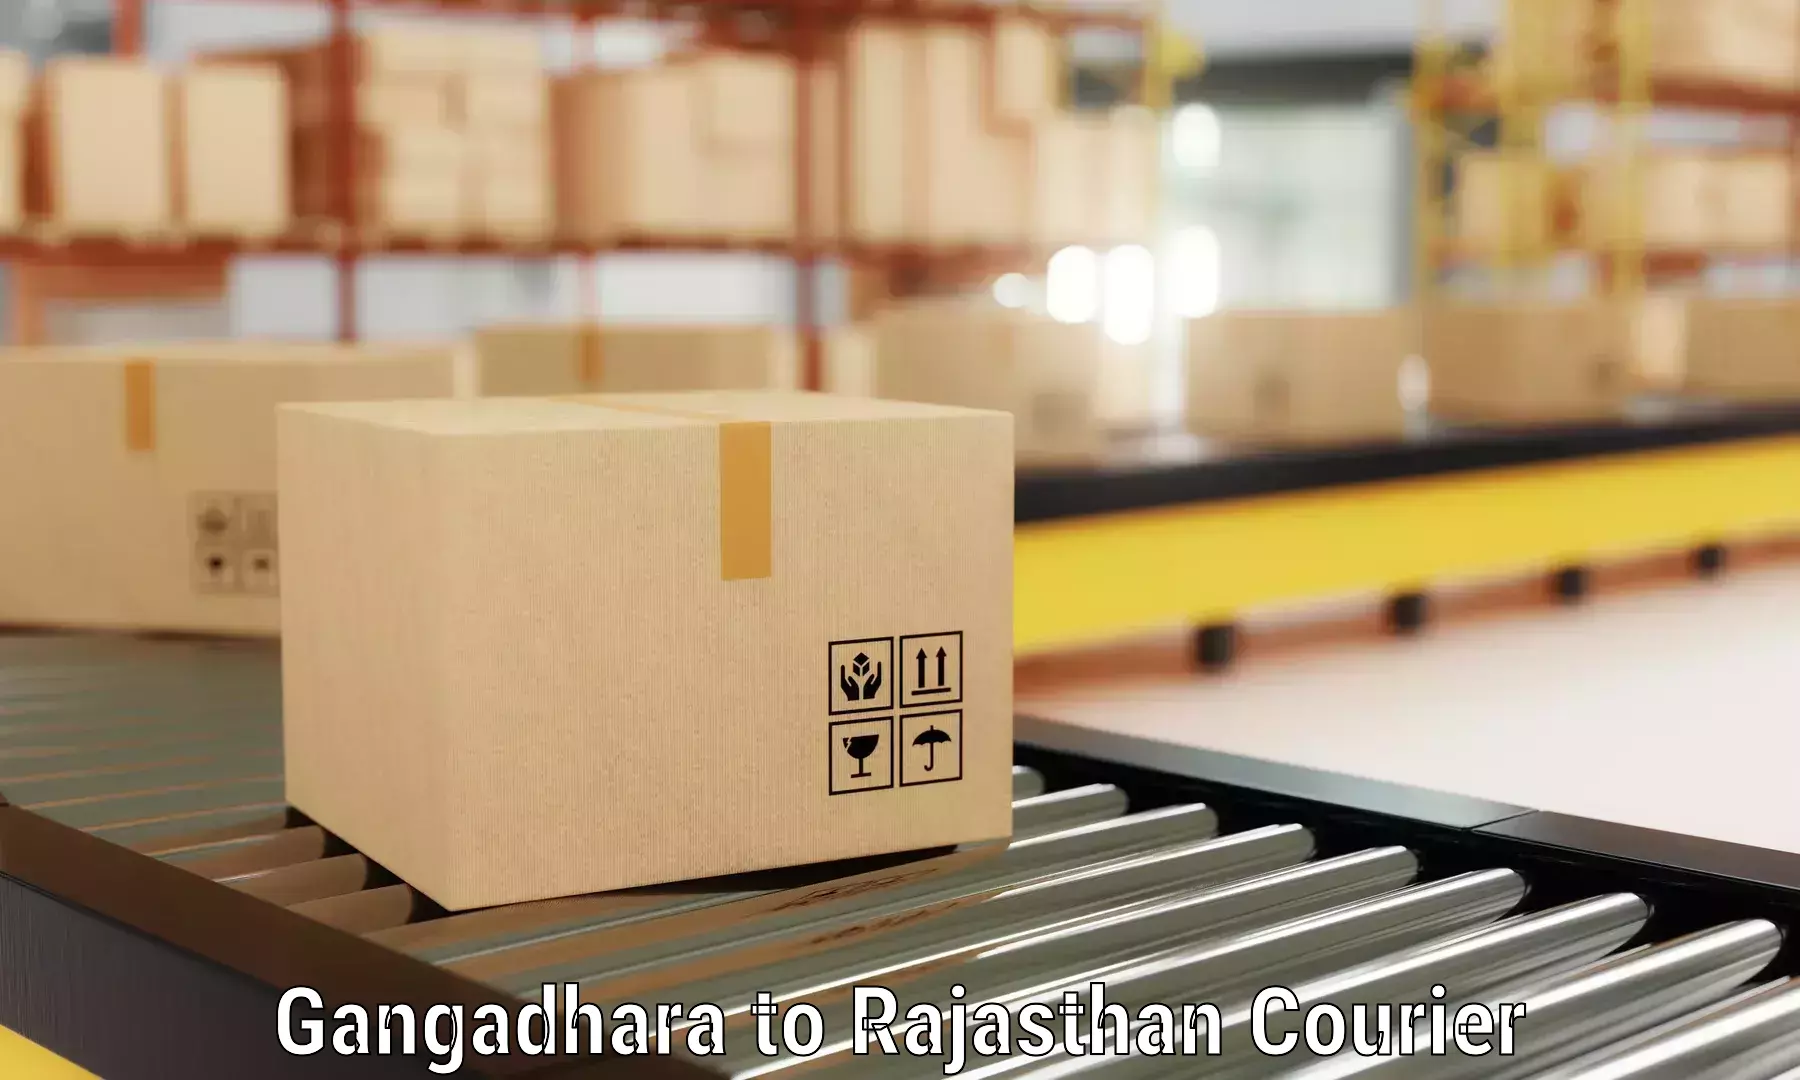 Furniture moving plans Gangadhara to Jaipur